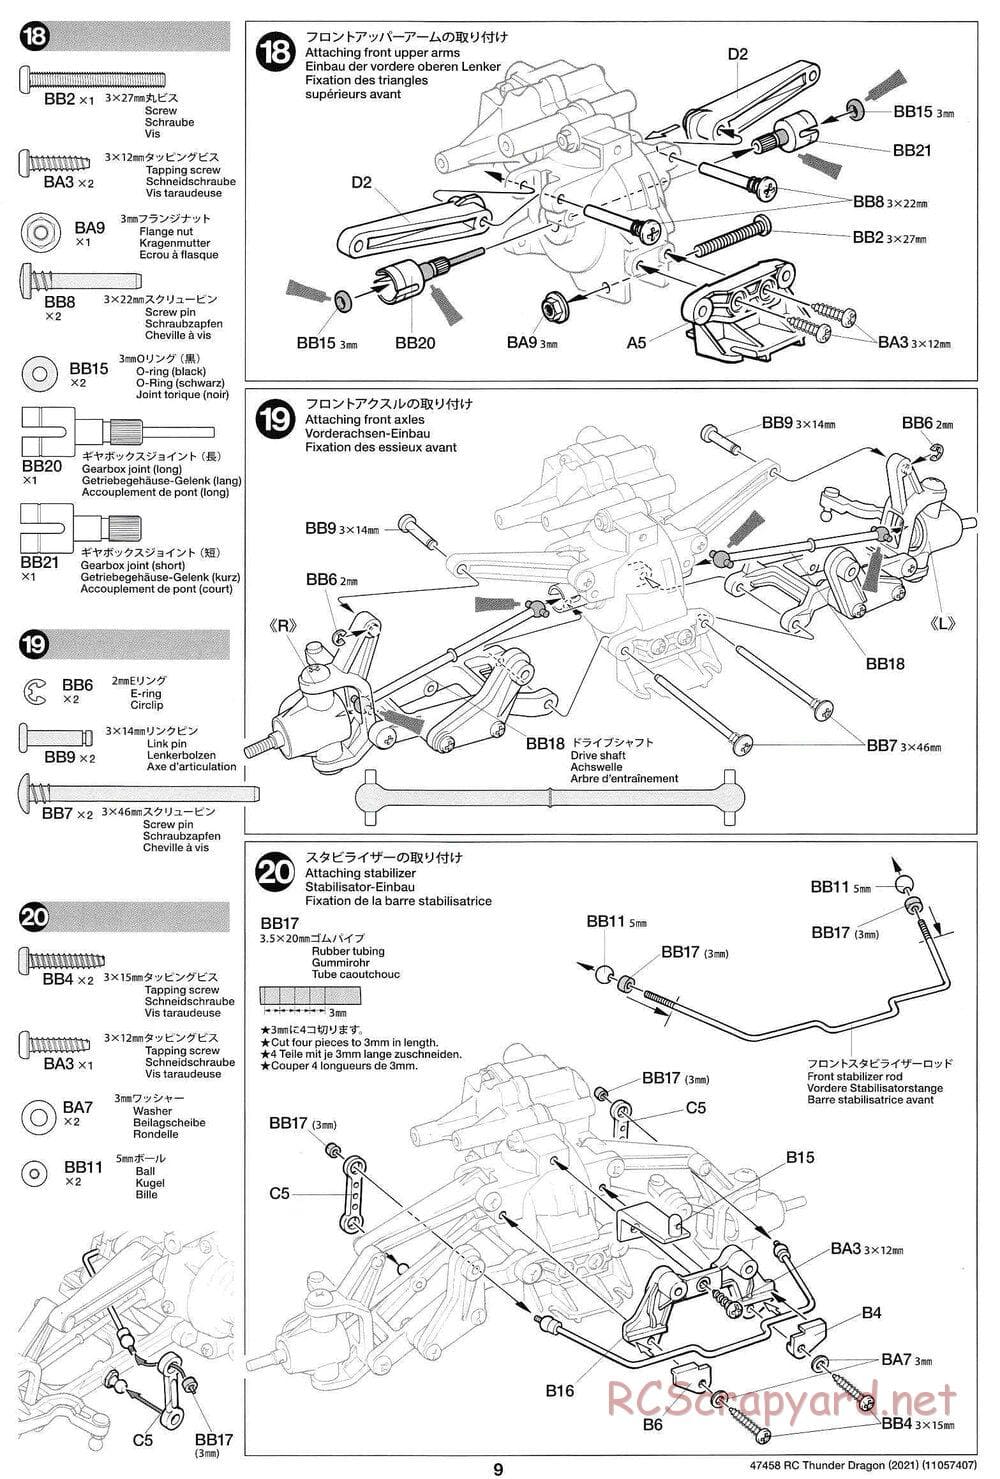 Tamiya - Thunder Dragon (2021) Chassis - Manual - Page 9